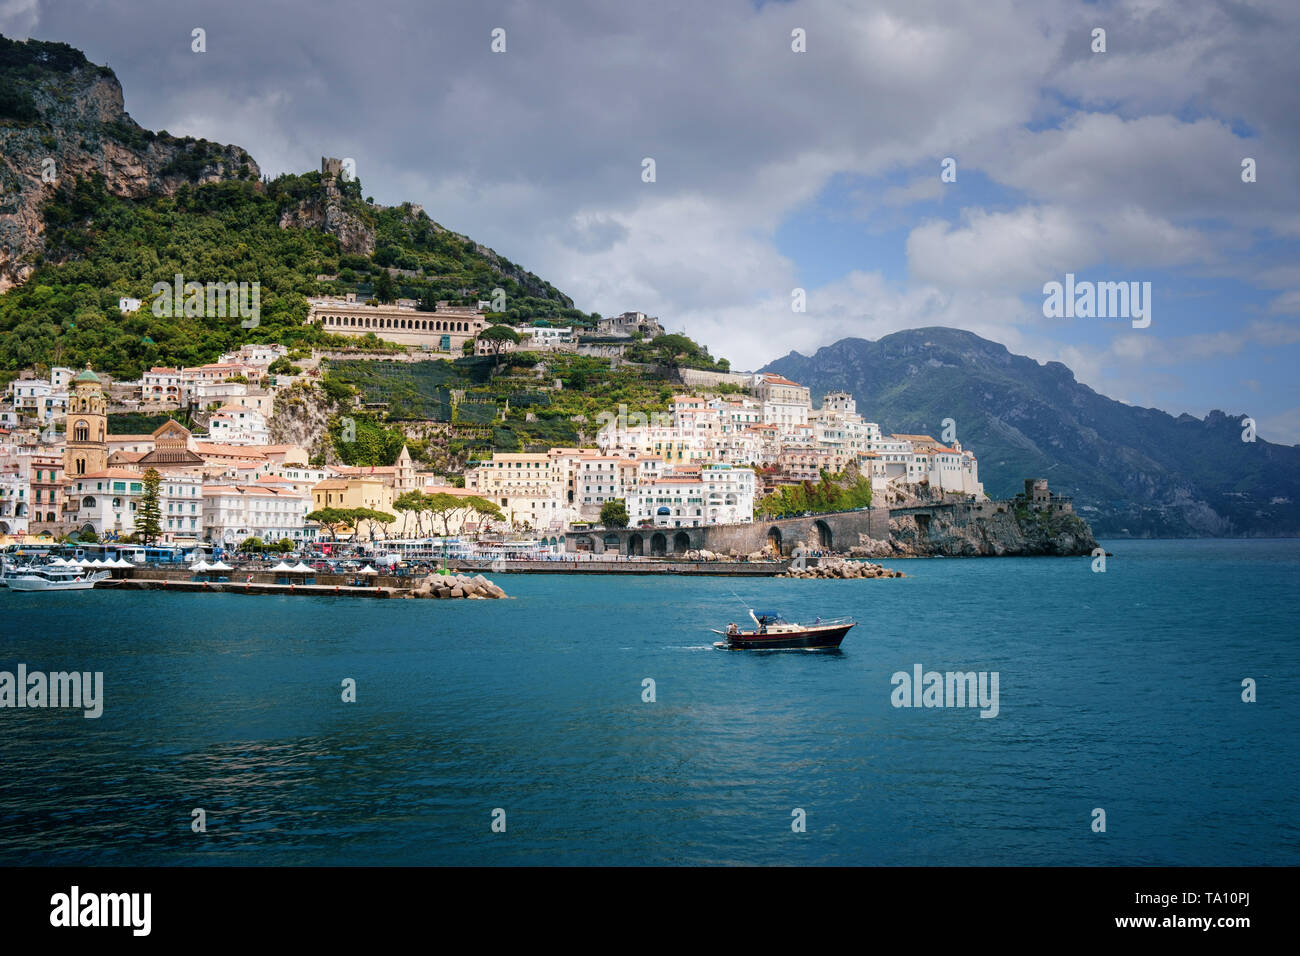 Der Steuerkurs des Schiffs, um die Bucht von Salerno und Tyrrhenische Meer von der Küstenstadt Amalfi an der Amalfiküste in Kampanien im Süden Italiens. Stockfoto